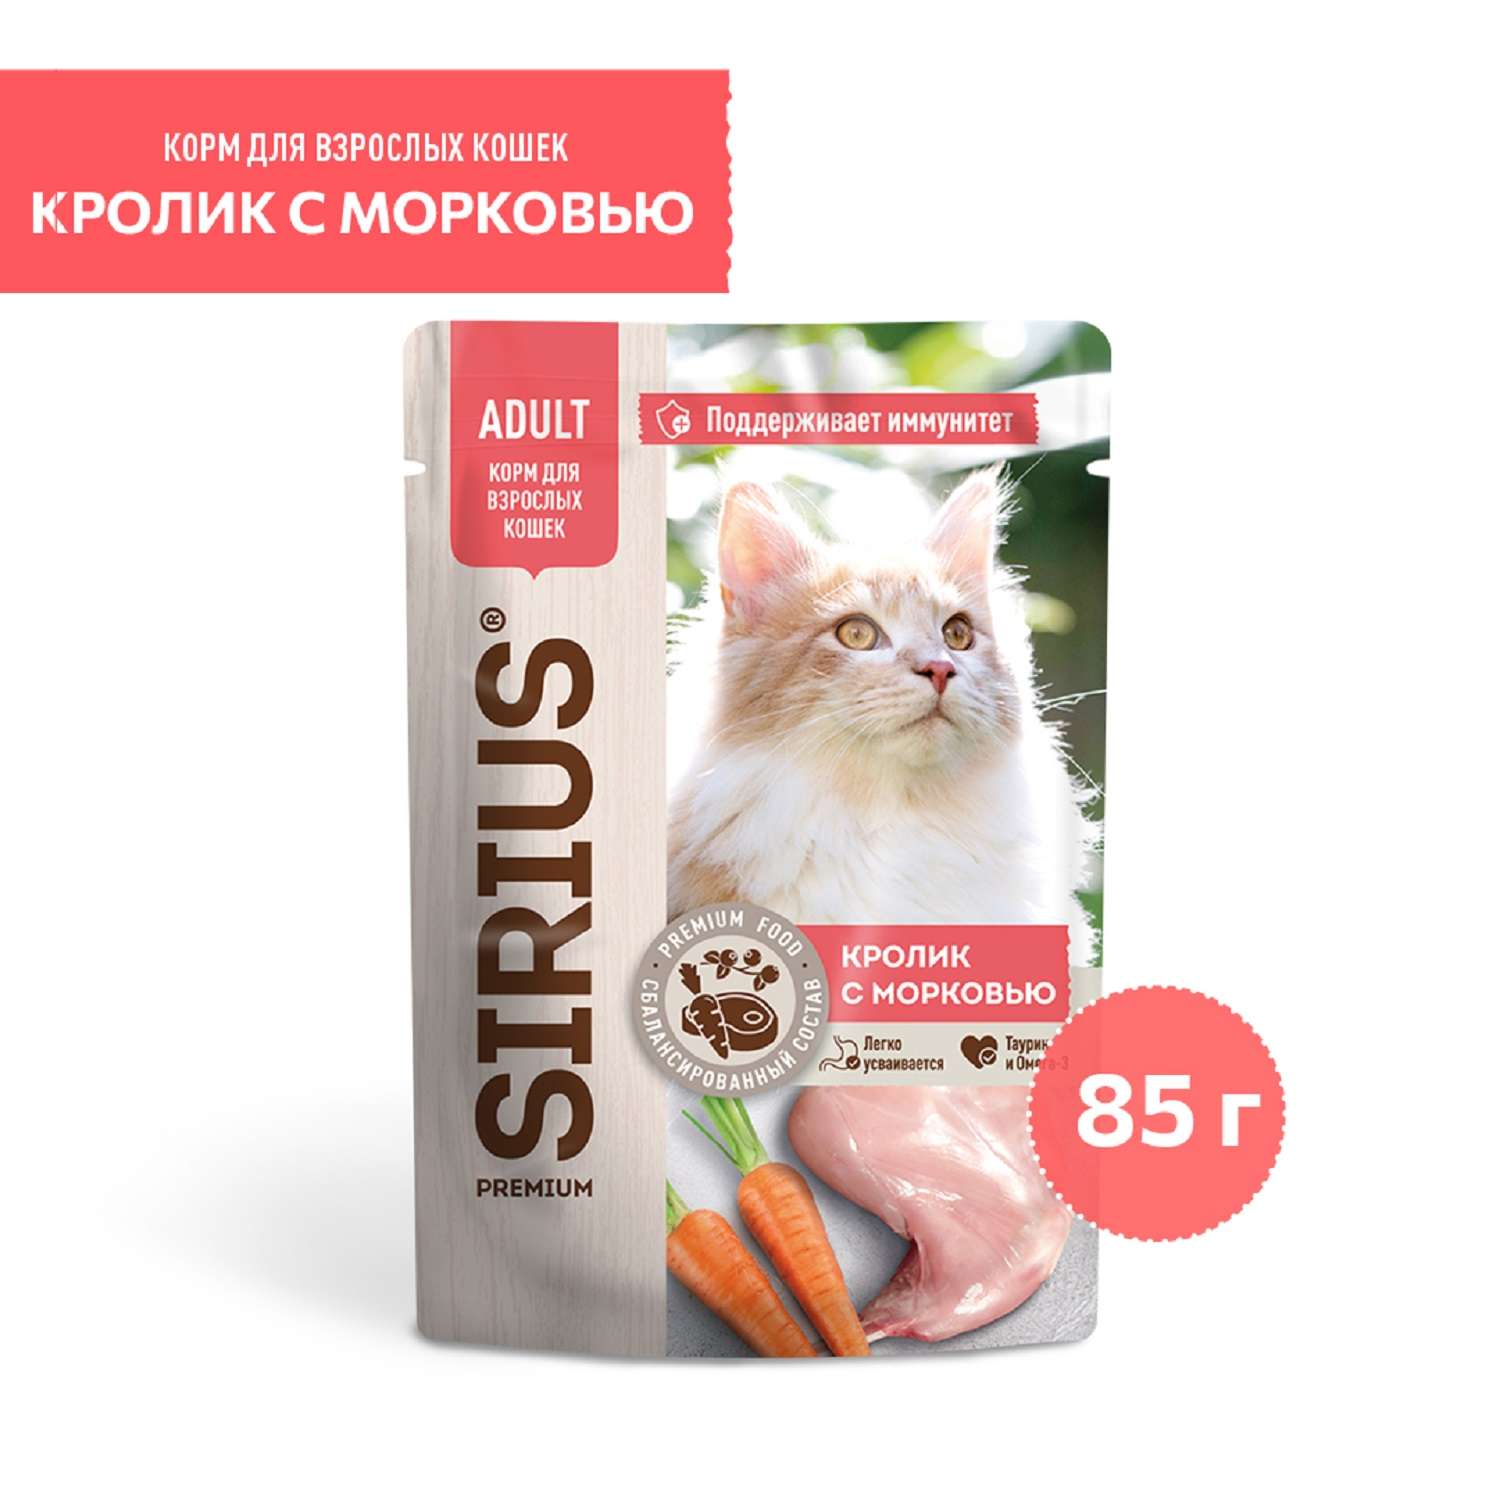 Корм для кошек Sirius 85г Premium Adult кролик с морковью кусочки в соусе пауч - фото 1